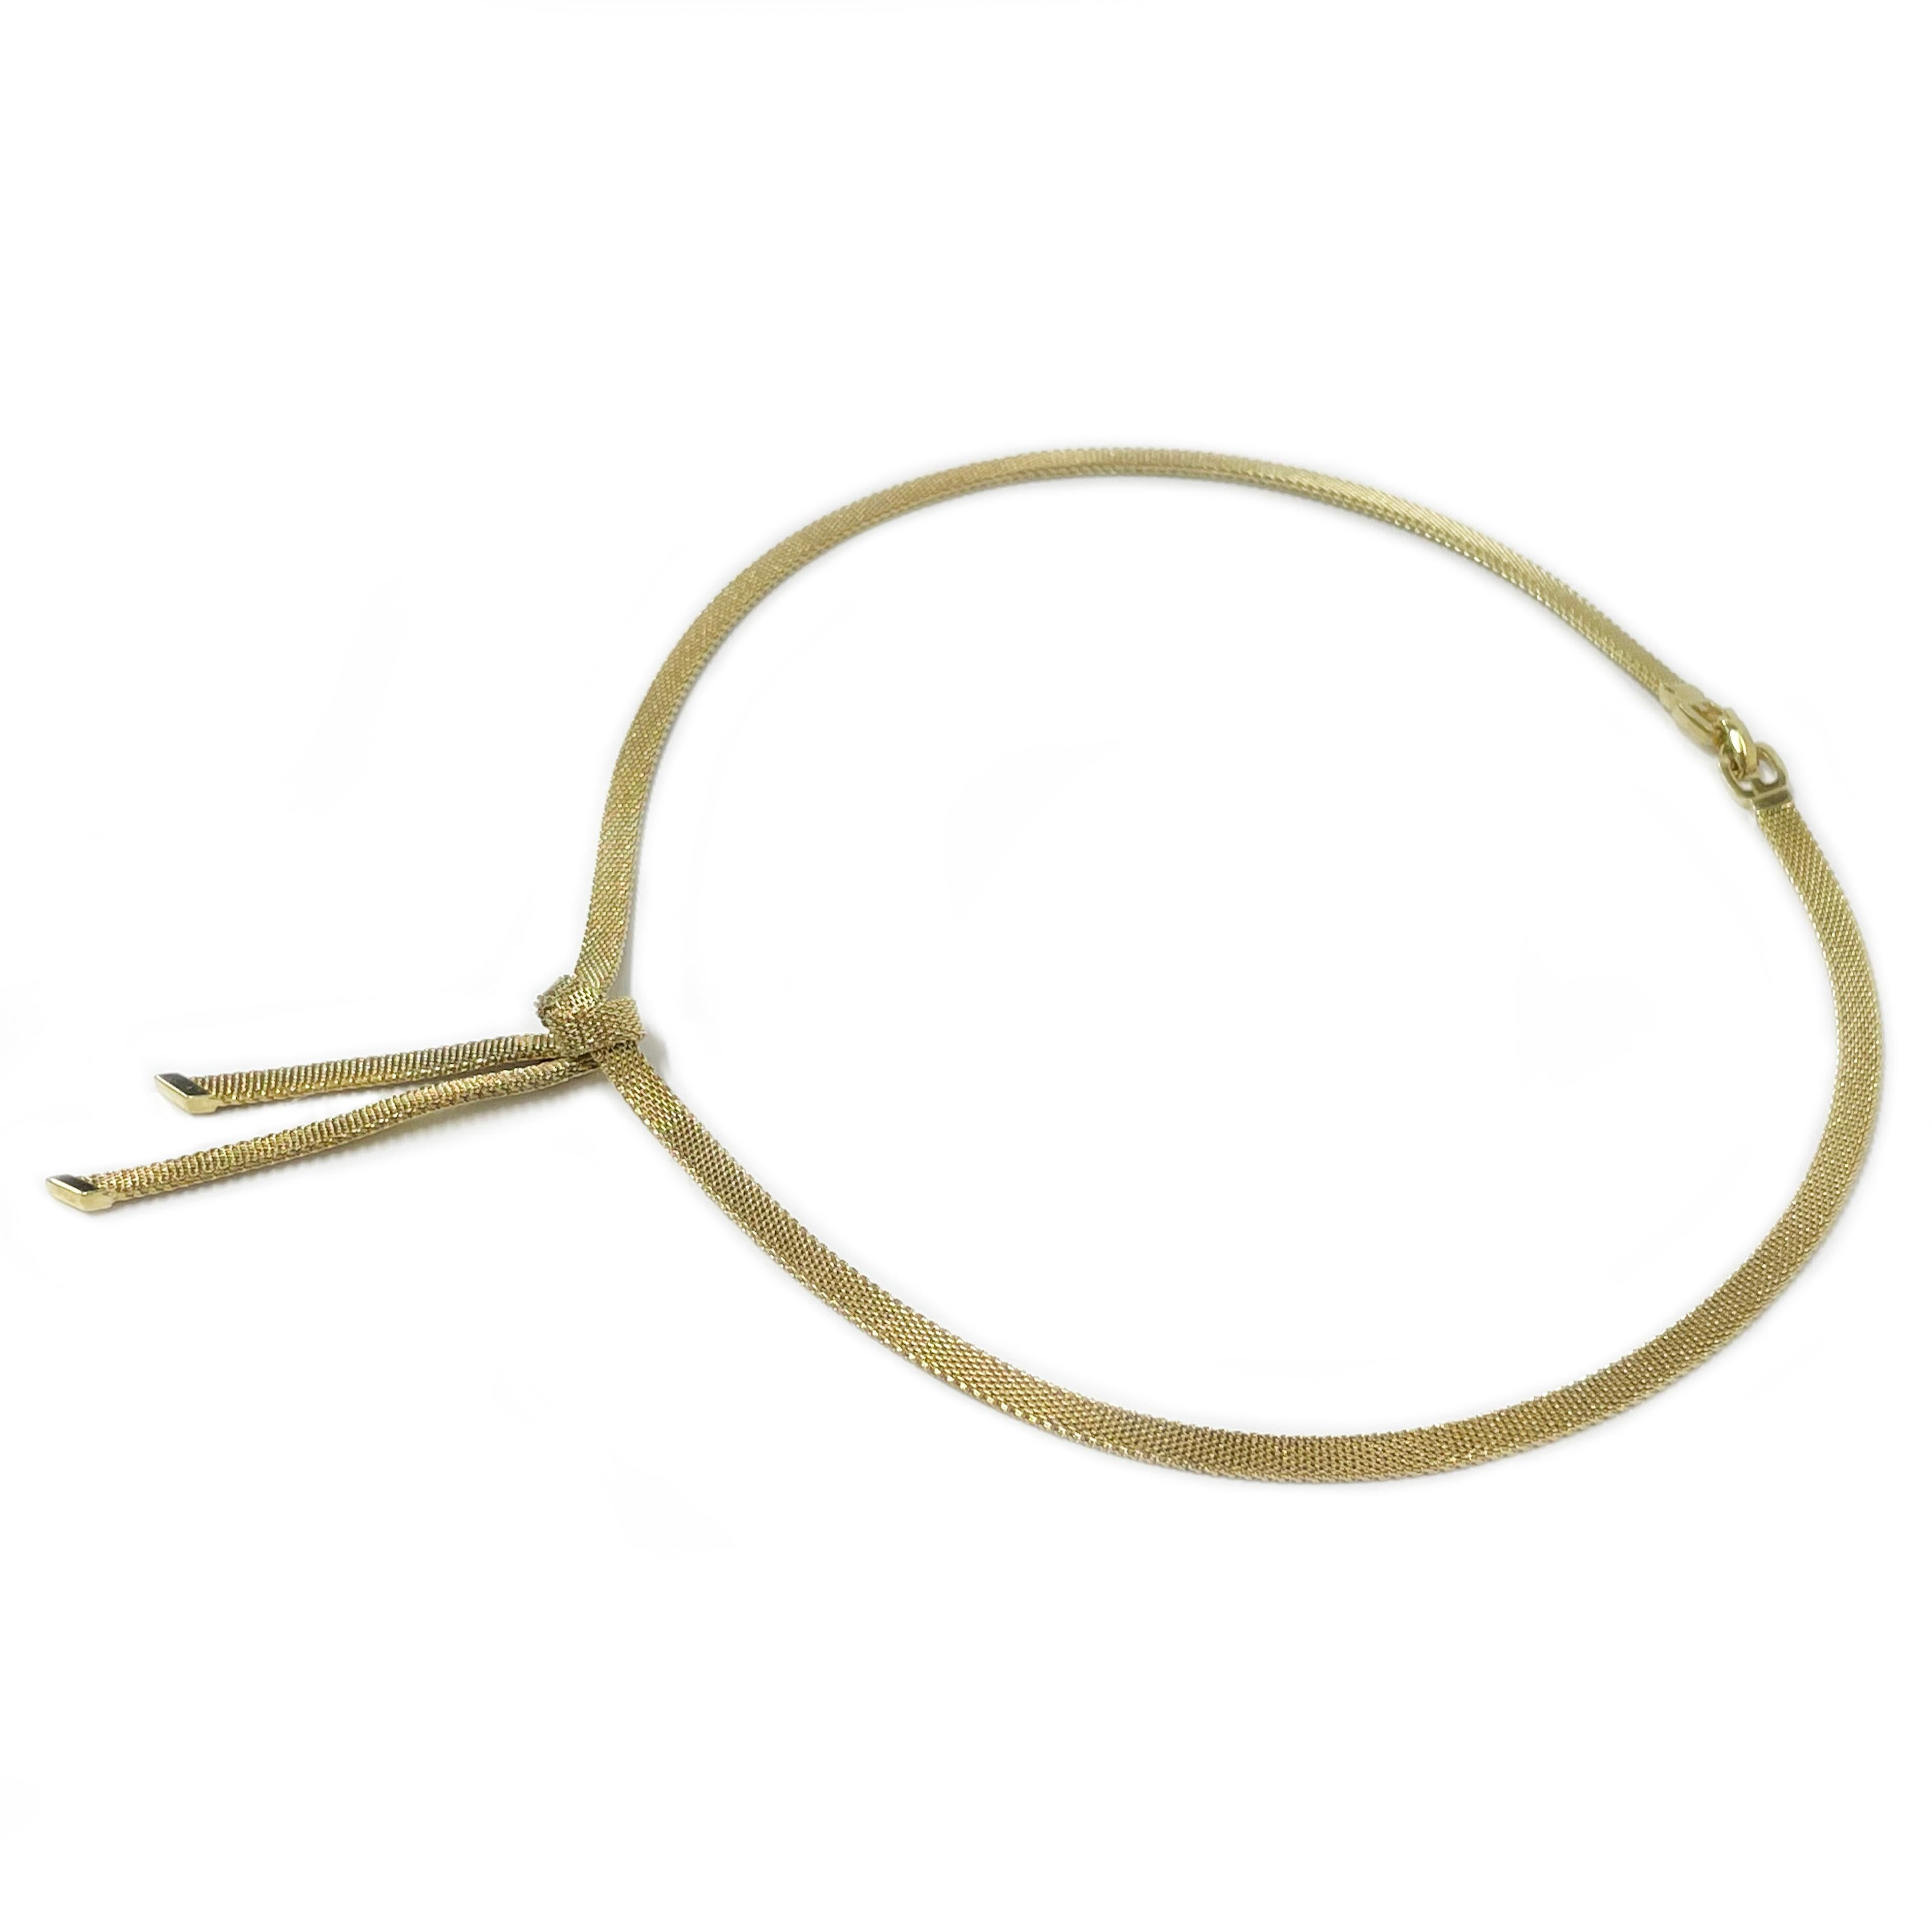 Collier à nœuds en or jaune 14 carats. Ce ravissant collier présente un nœud à la base avec deux morceaux de chaîne pendants avec un embout diagonal lisse et brillant sur chaque morceau. Le collier mesure 4 mm de large et 15,75